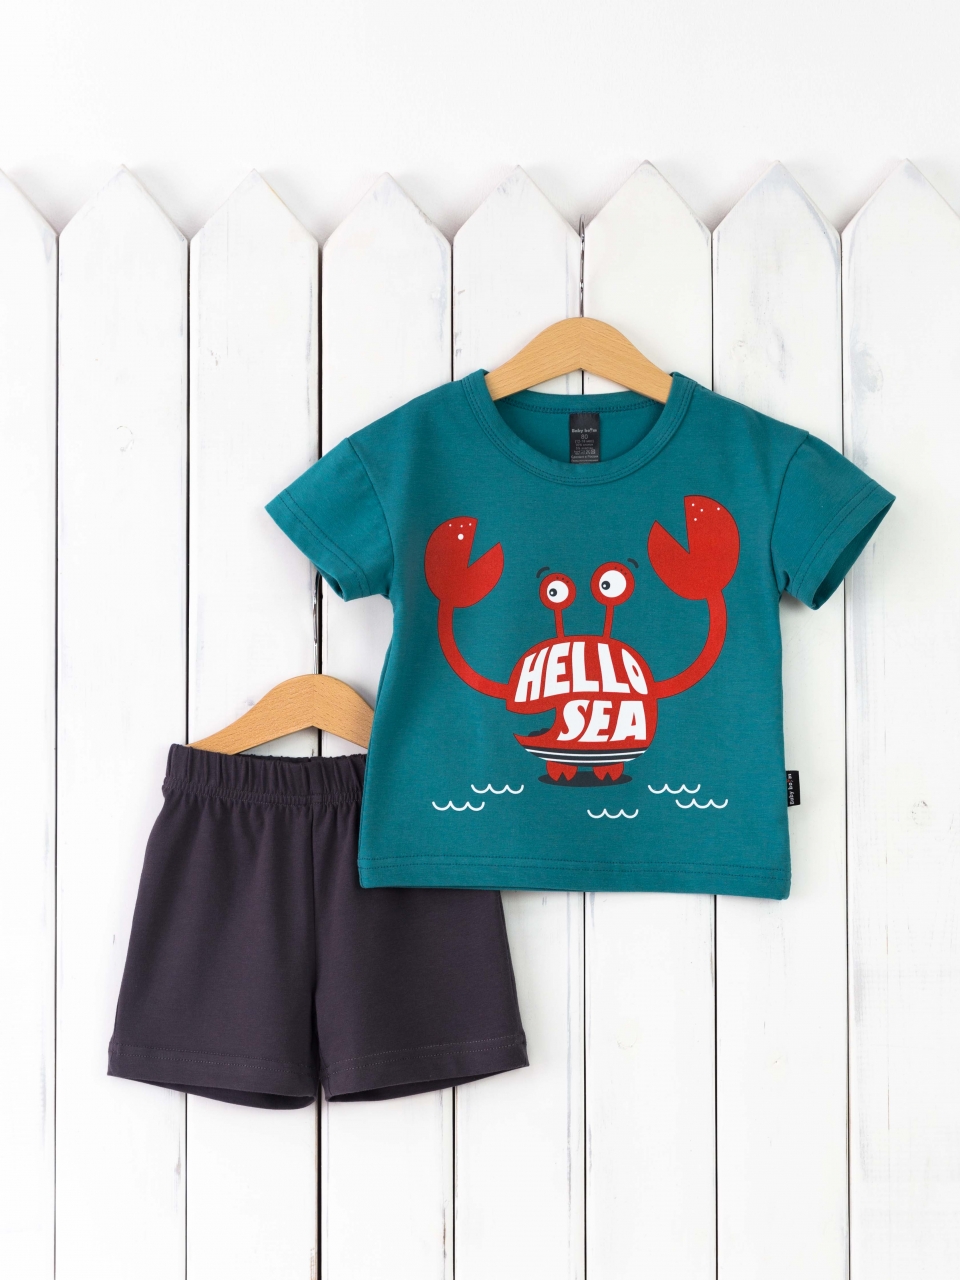 КД467/1-К Комплект р.92 футболка/морская волна+шорты графит Бэби Бум